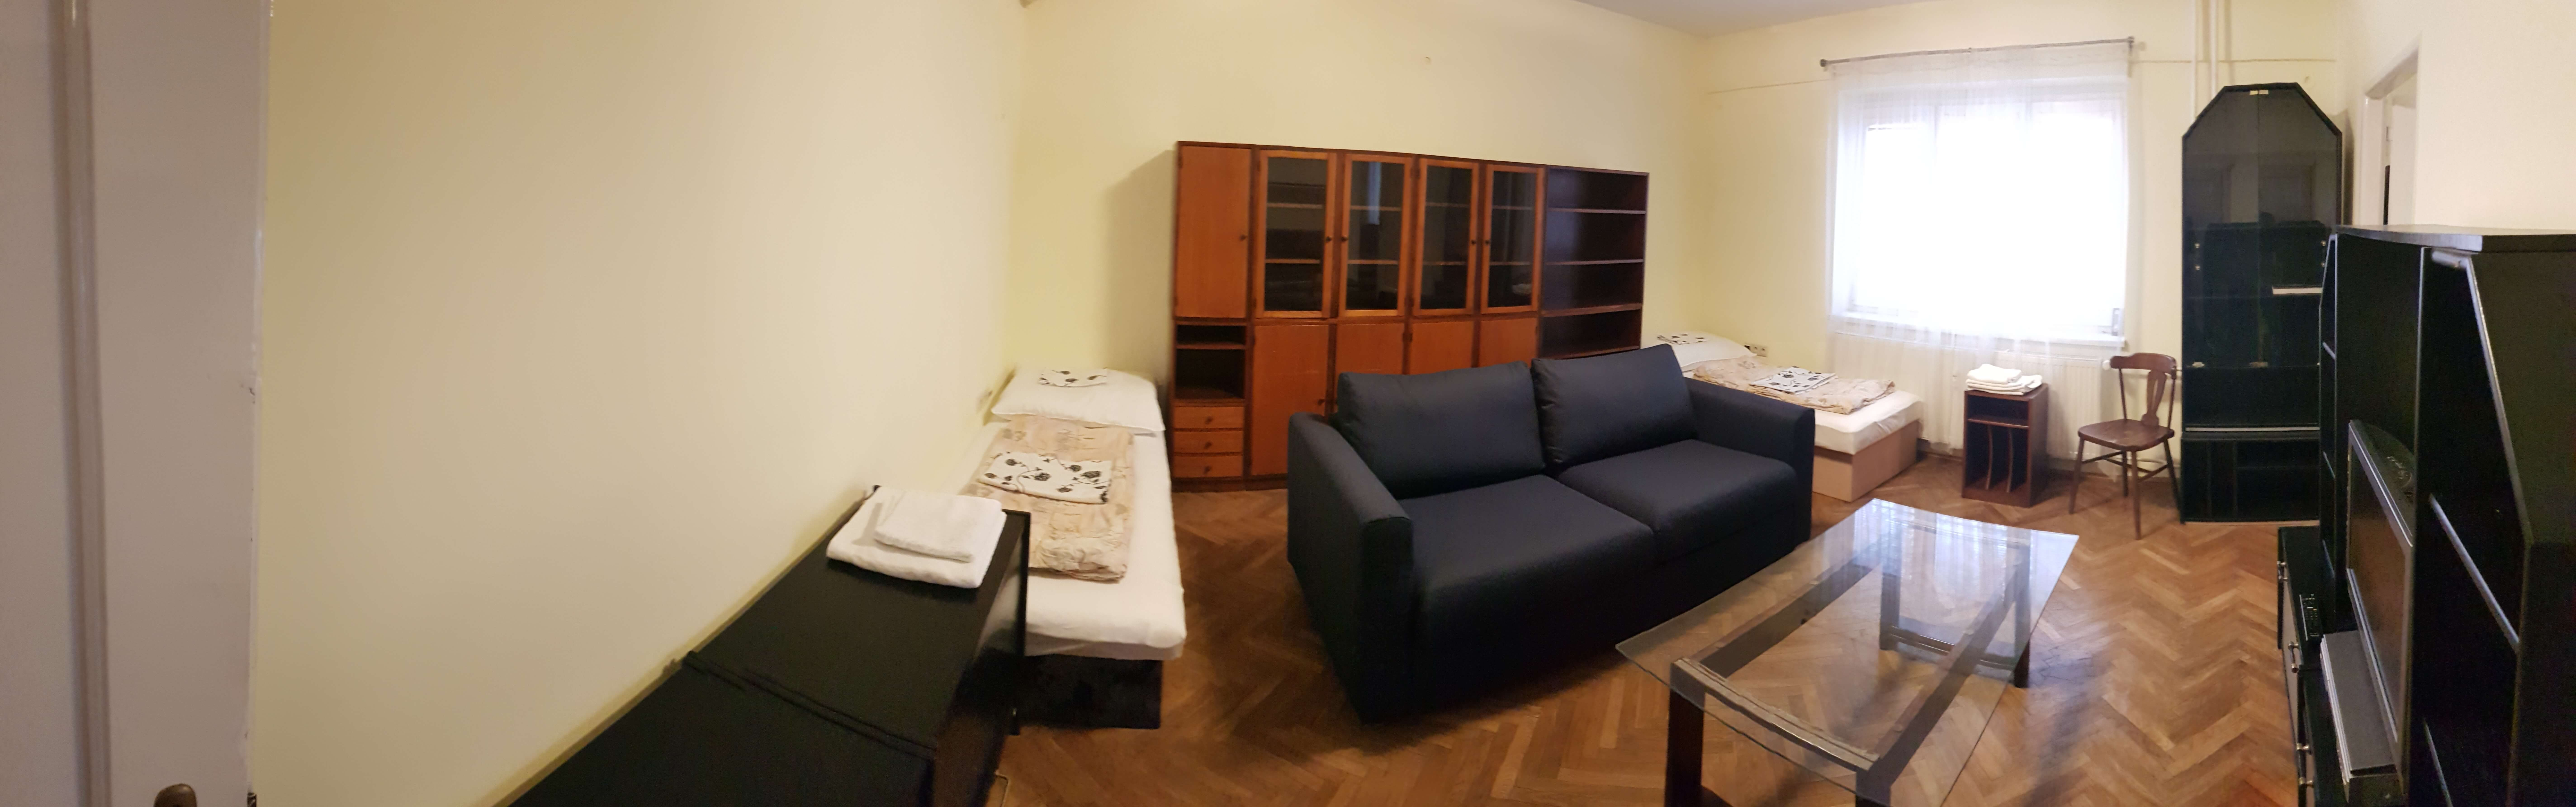 Prenajaté: Prenájom veľkého 2 izbového bytu 80m2, staré mesto, Šancová ulica 37, Bratislava, zariadený-37